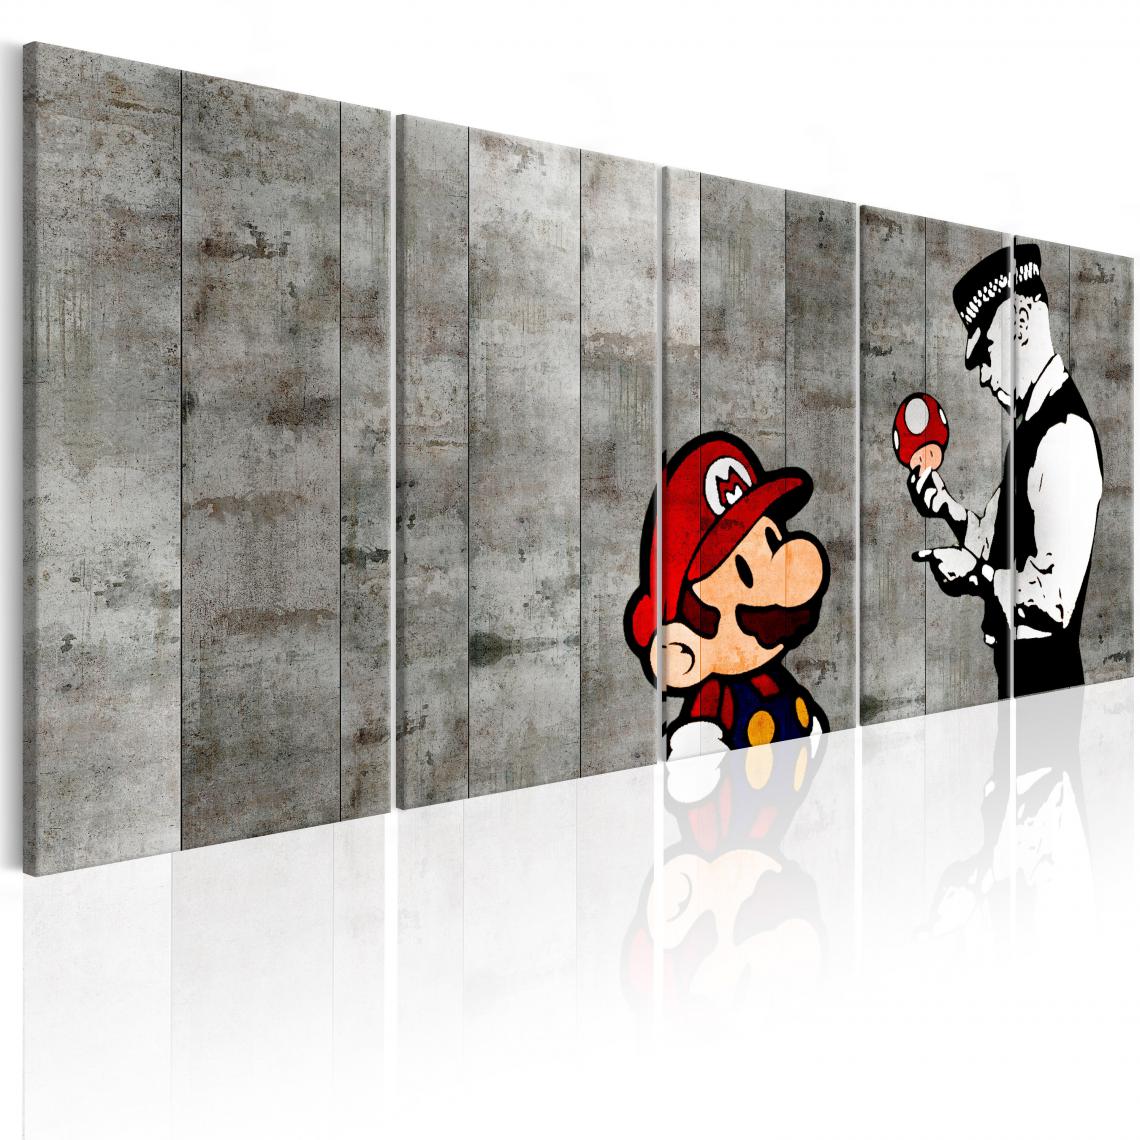 Decoshop26 - Tableau sur toile en 5 panneaux décoration murale image imprimée cadre en bois à suspendre Graffiti sur béton 200x80 cm 11_0003563 - Tableaux, peintures